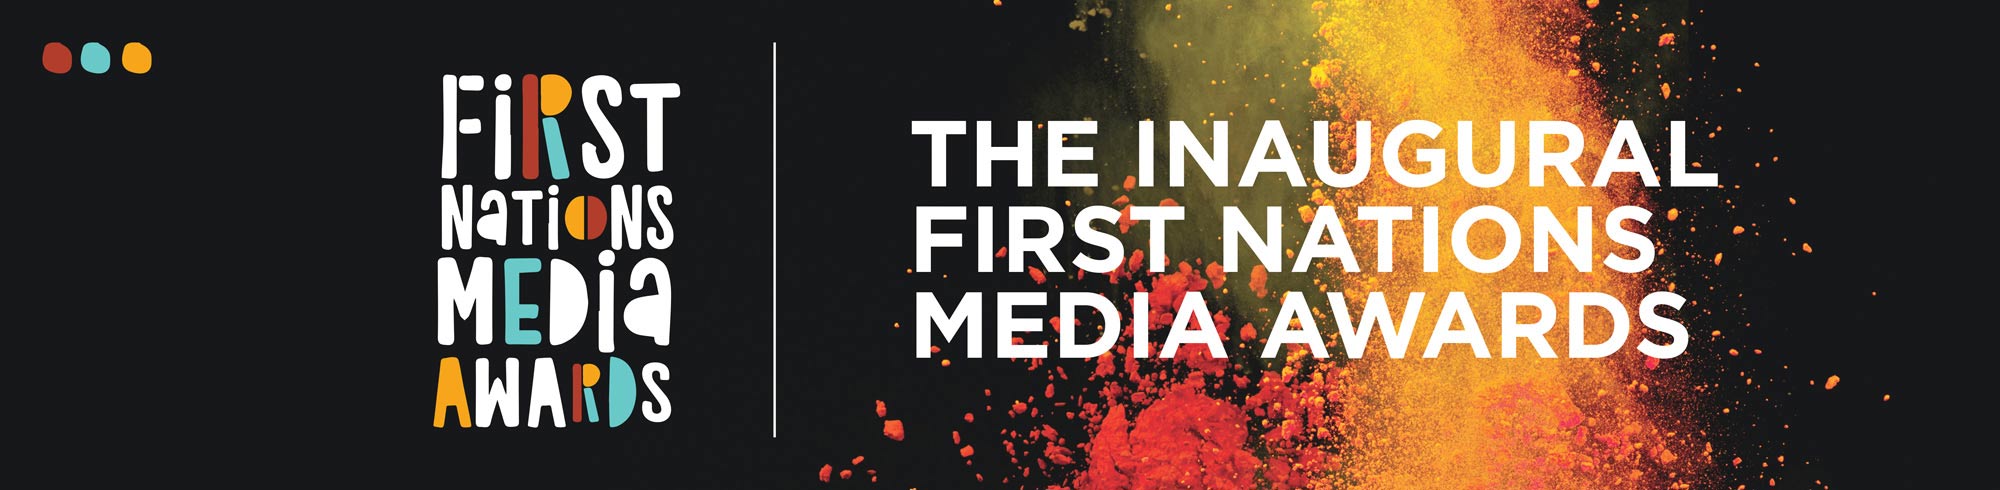 First Nations Media - awards header